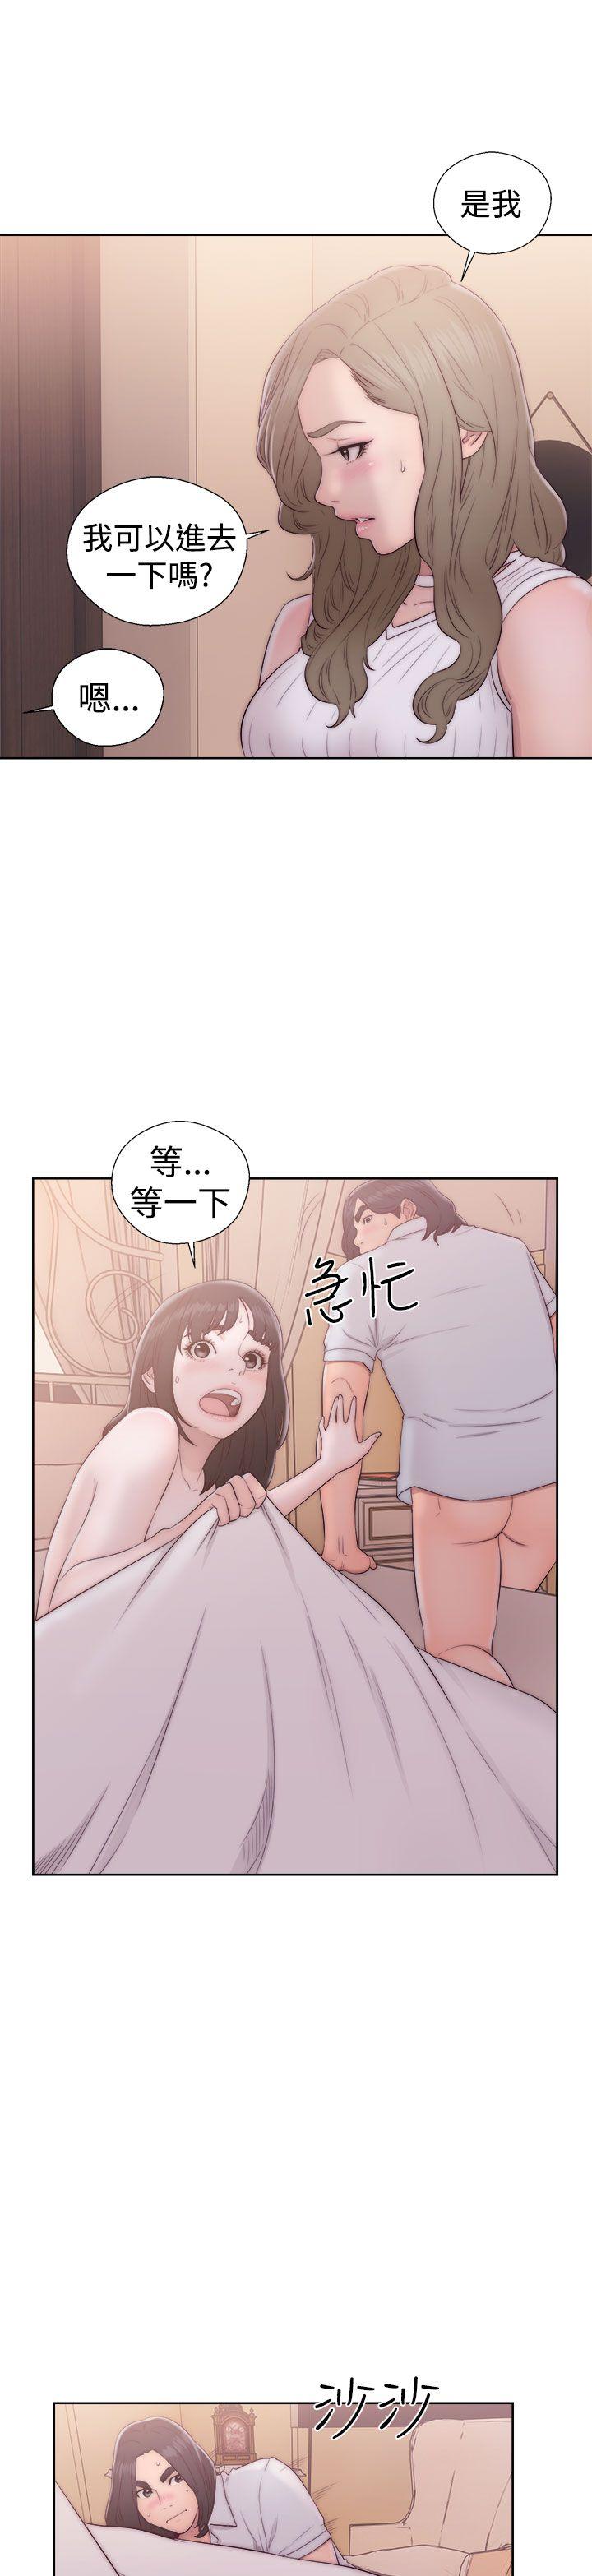 韩国污漫画 解禁:初始的快感 第37话 21